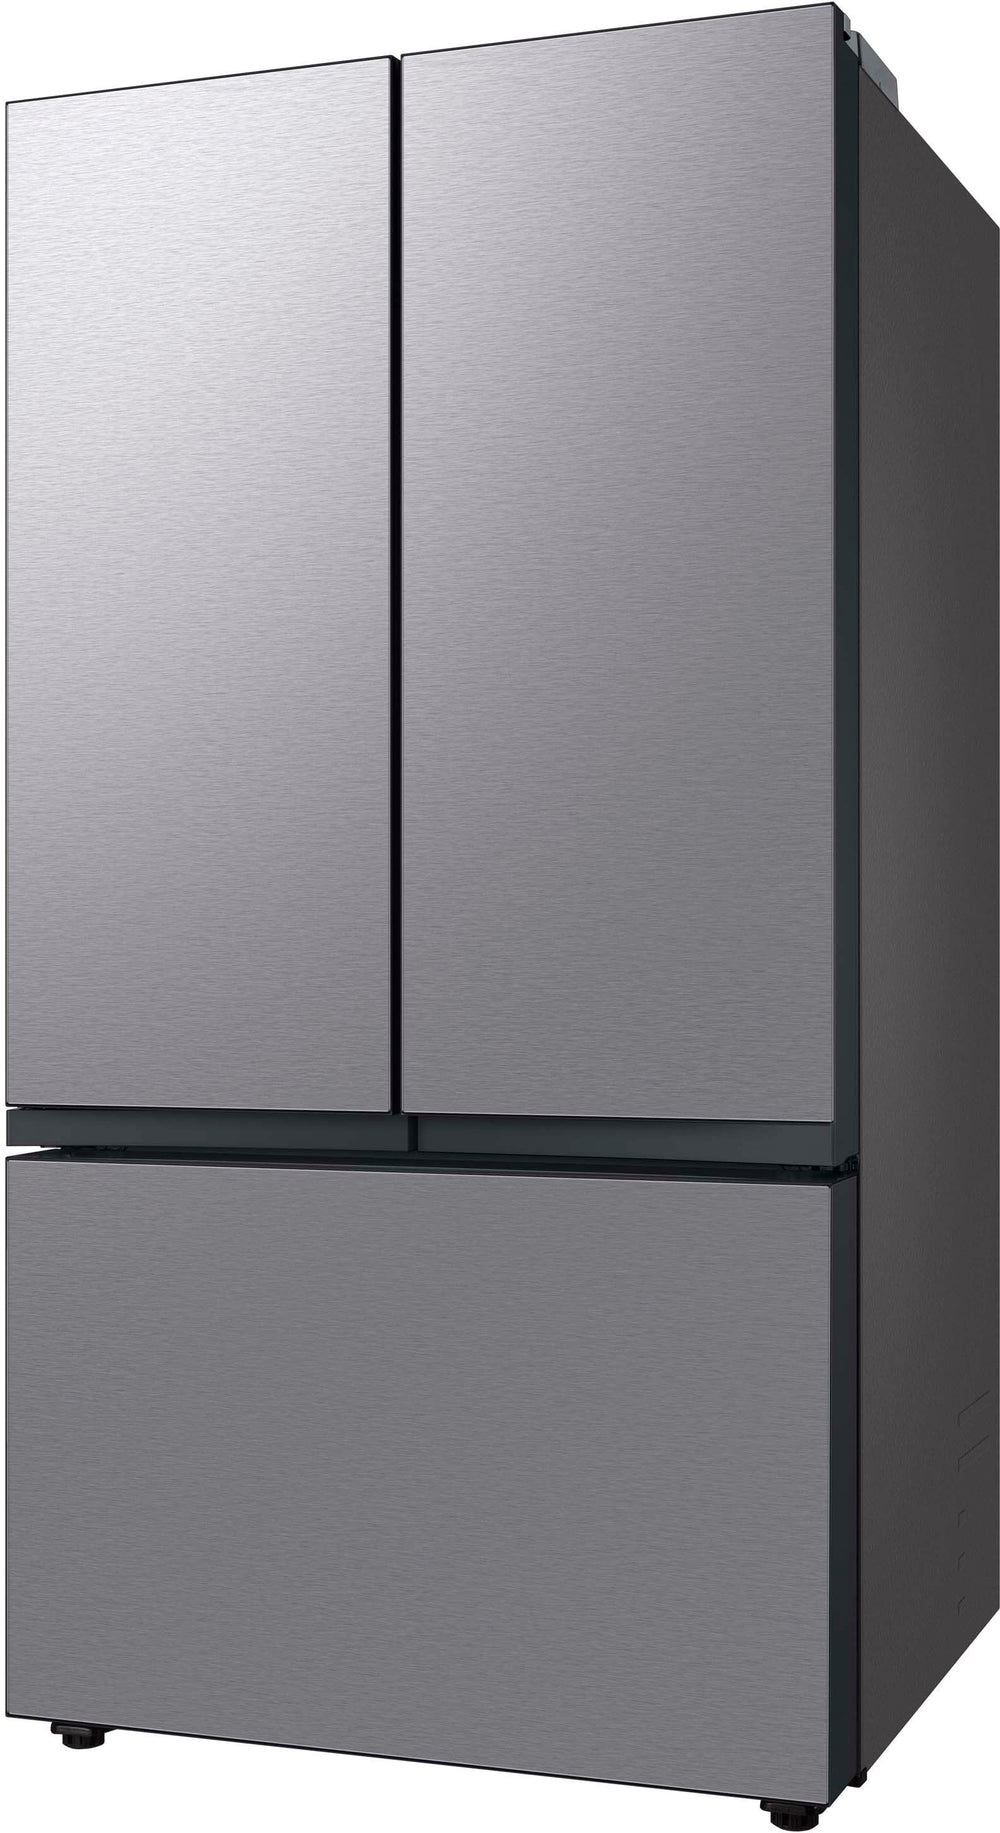 Samsung - Bespoke 30 cu. ft. 3-Door French Door Refrigerator with Beverage Center - Stainless steel_1